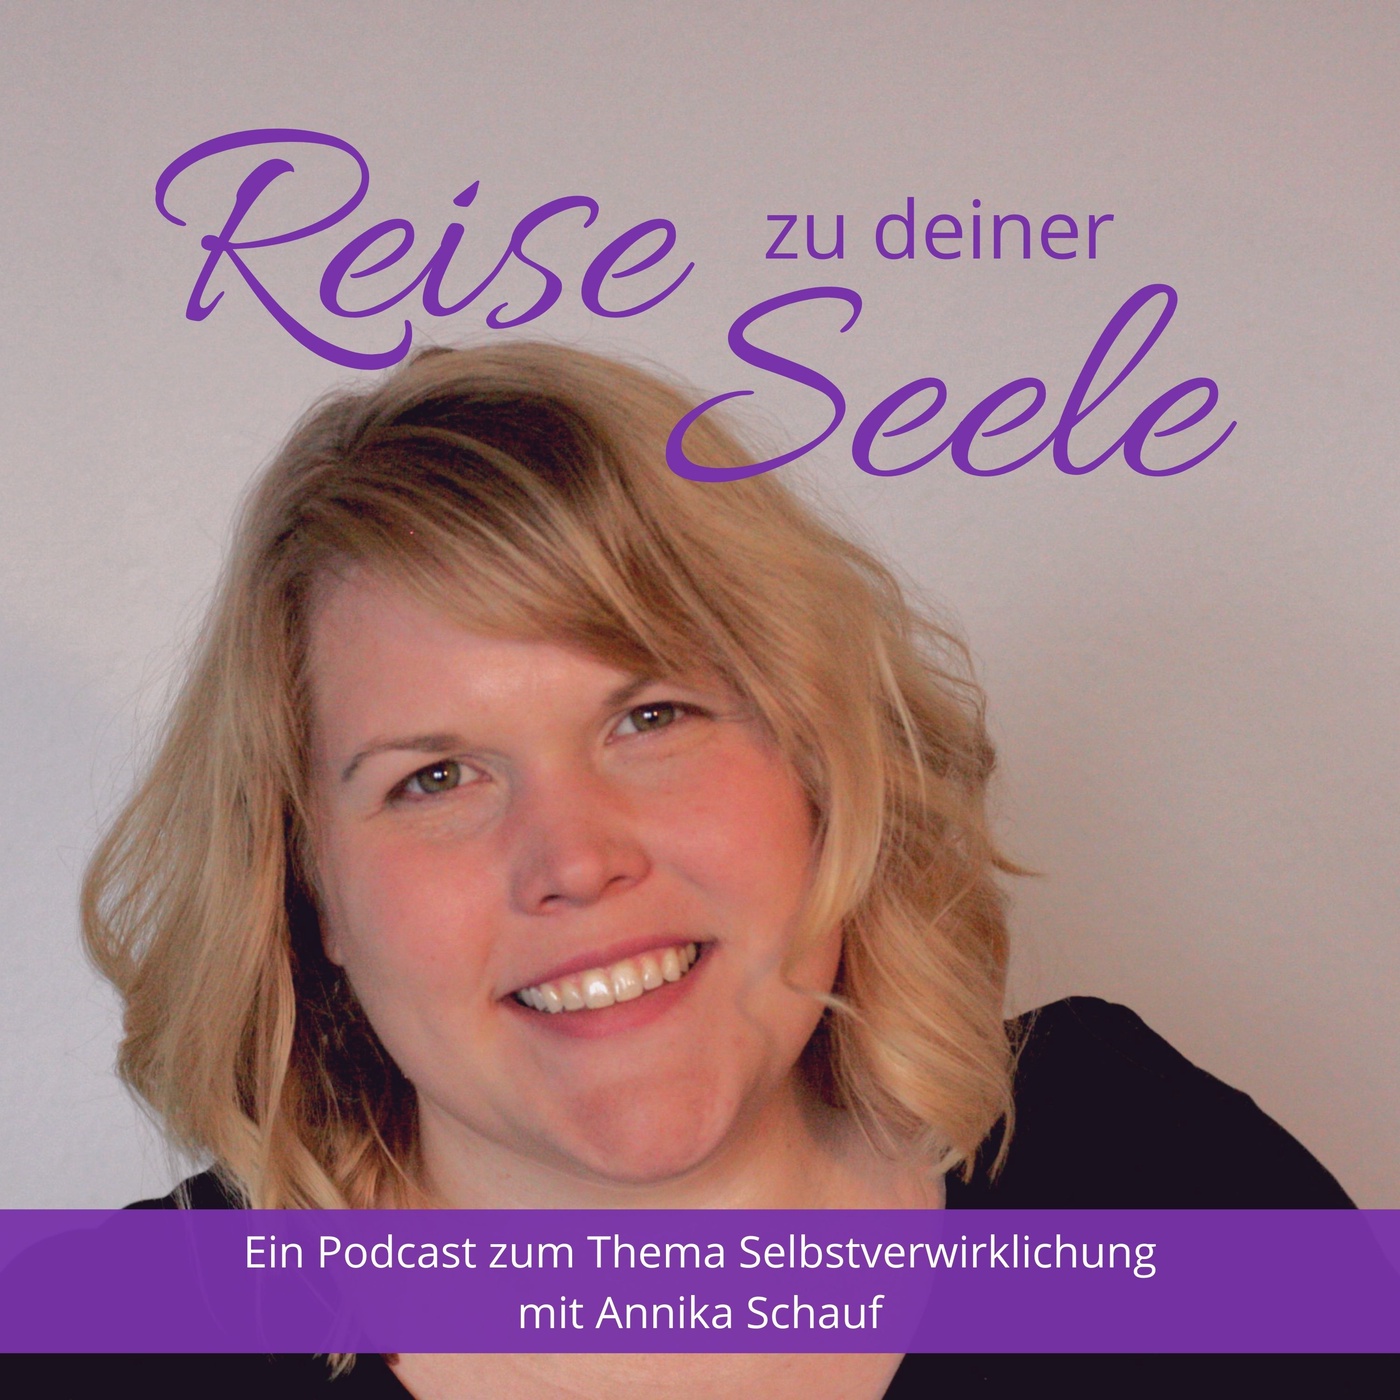 Reise zu deiner Seele 27 - Wie kreiert man sich ein glückliches Leben? Interview mit Luise Hahn